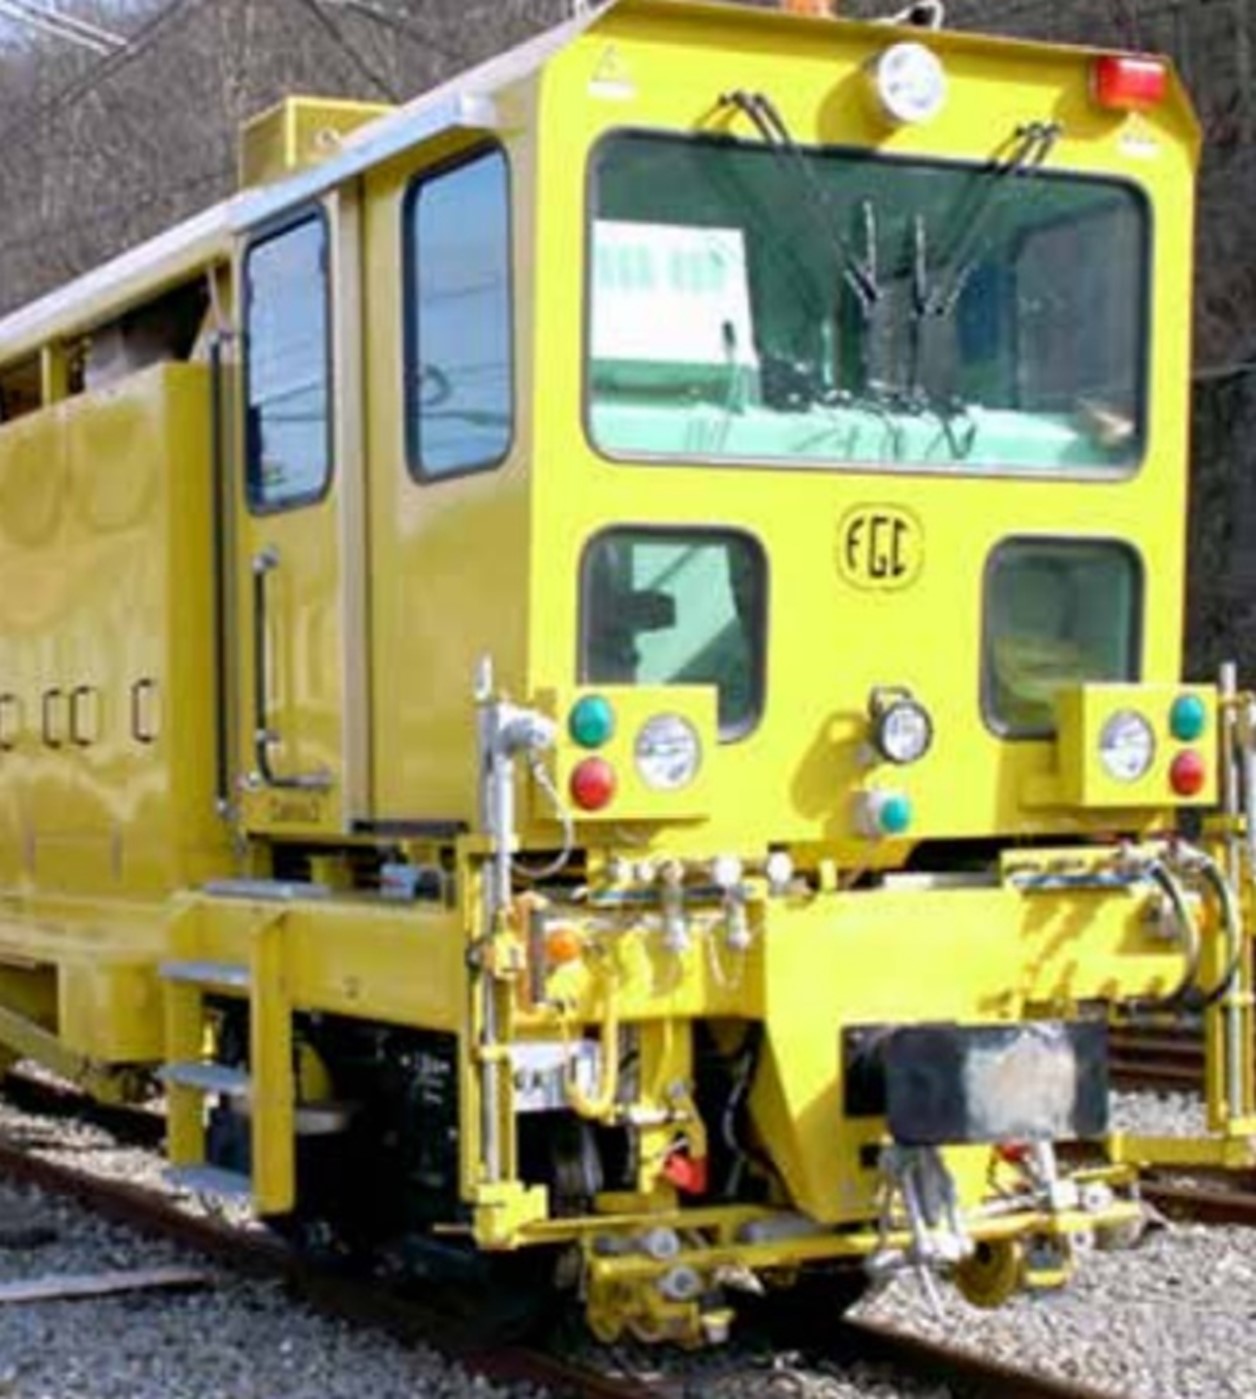 Equipamiento de mantenimiento ferroviario/ Taller ferroviario/ Mantenimiento de vía